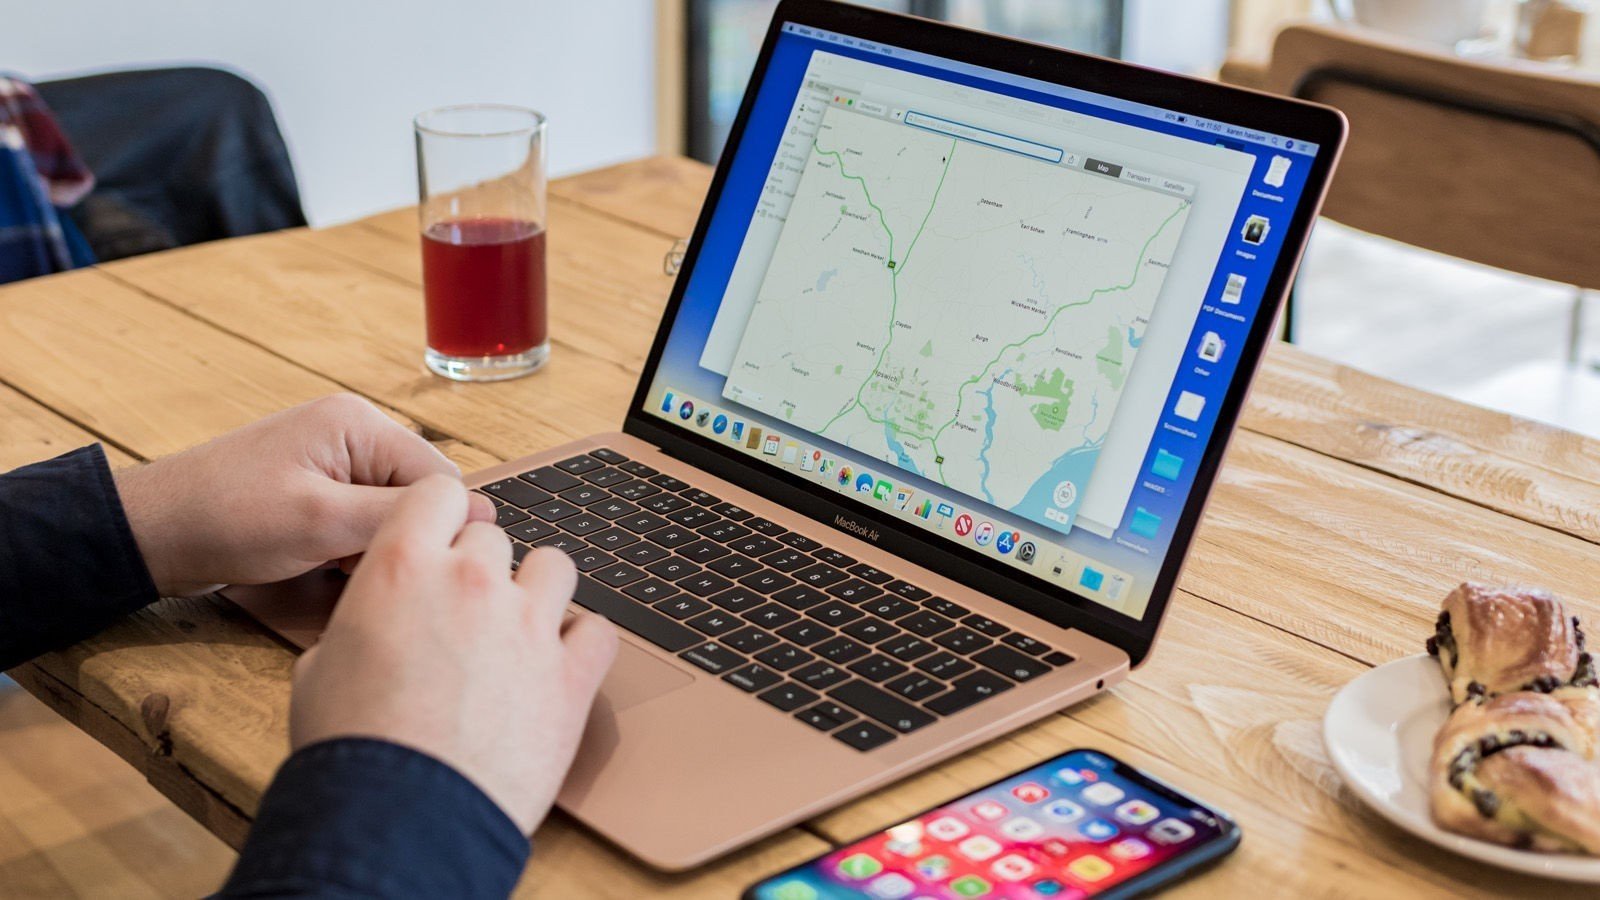 Macbook Air 2018 tân trang giá rẻ như iPhone Xs